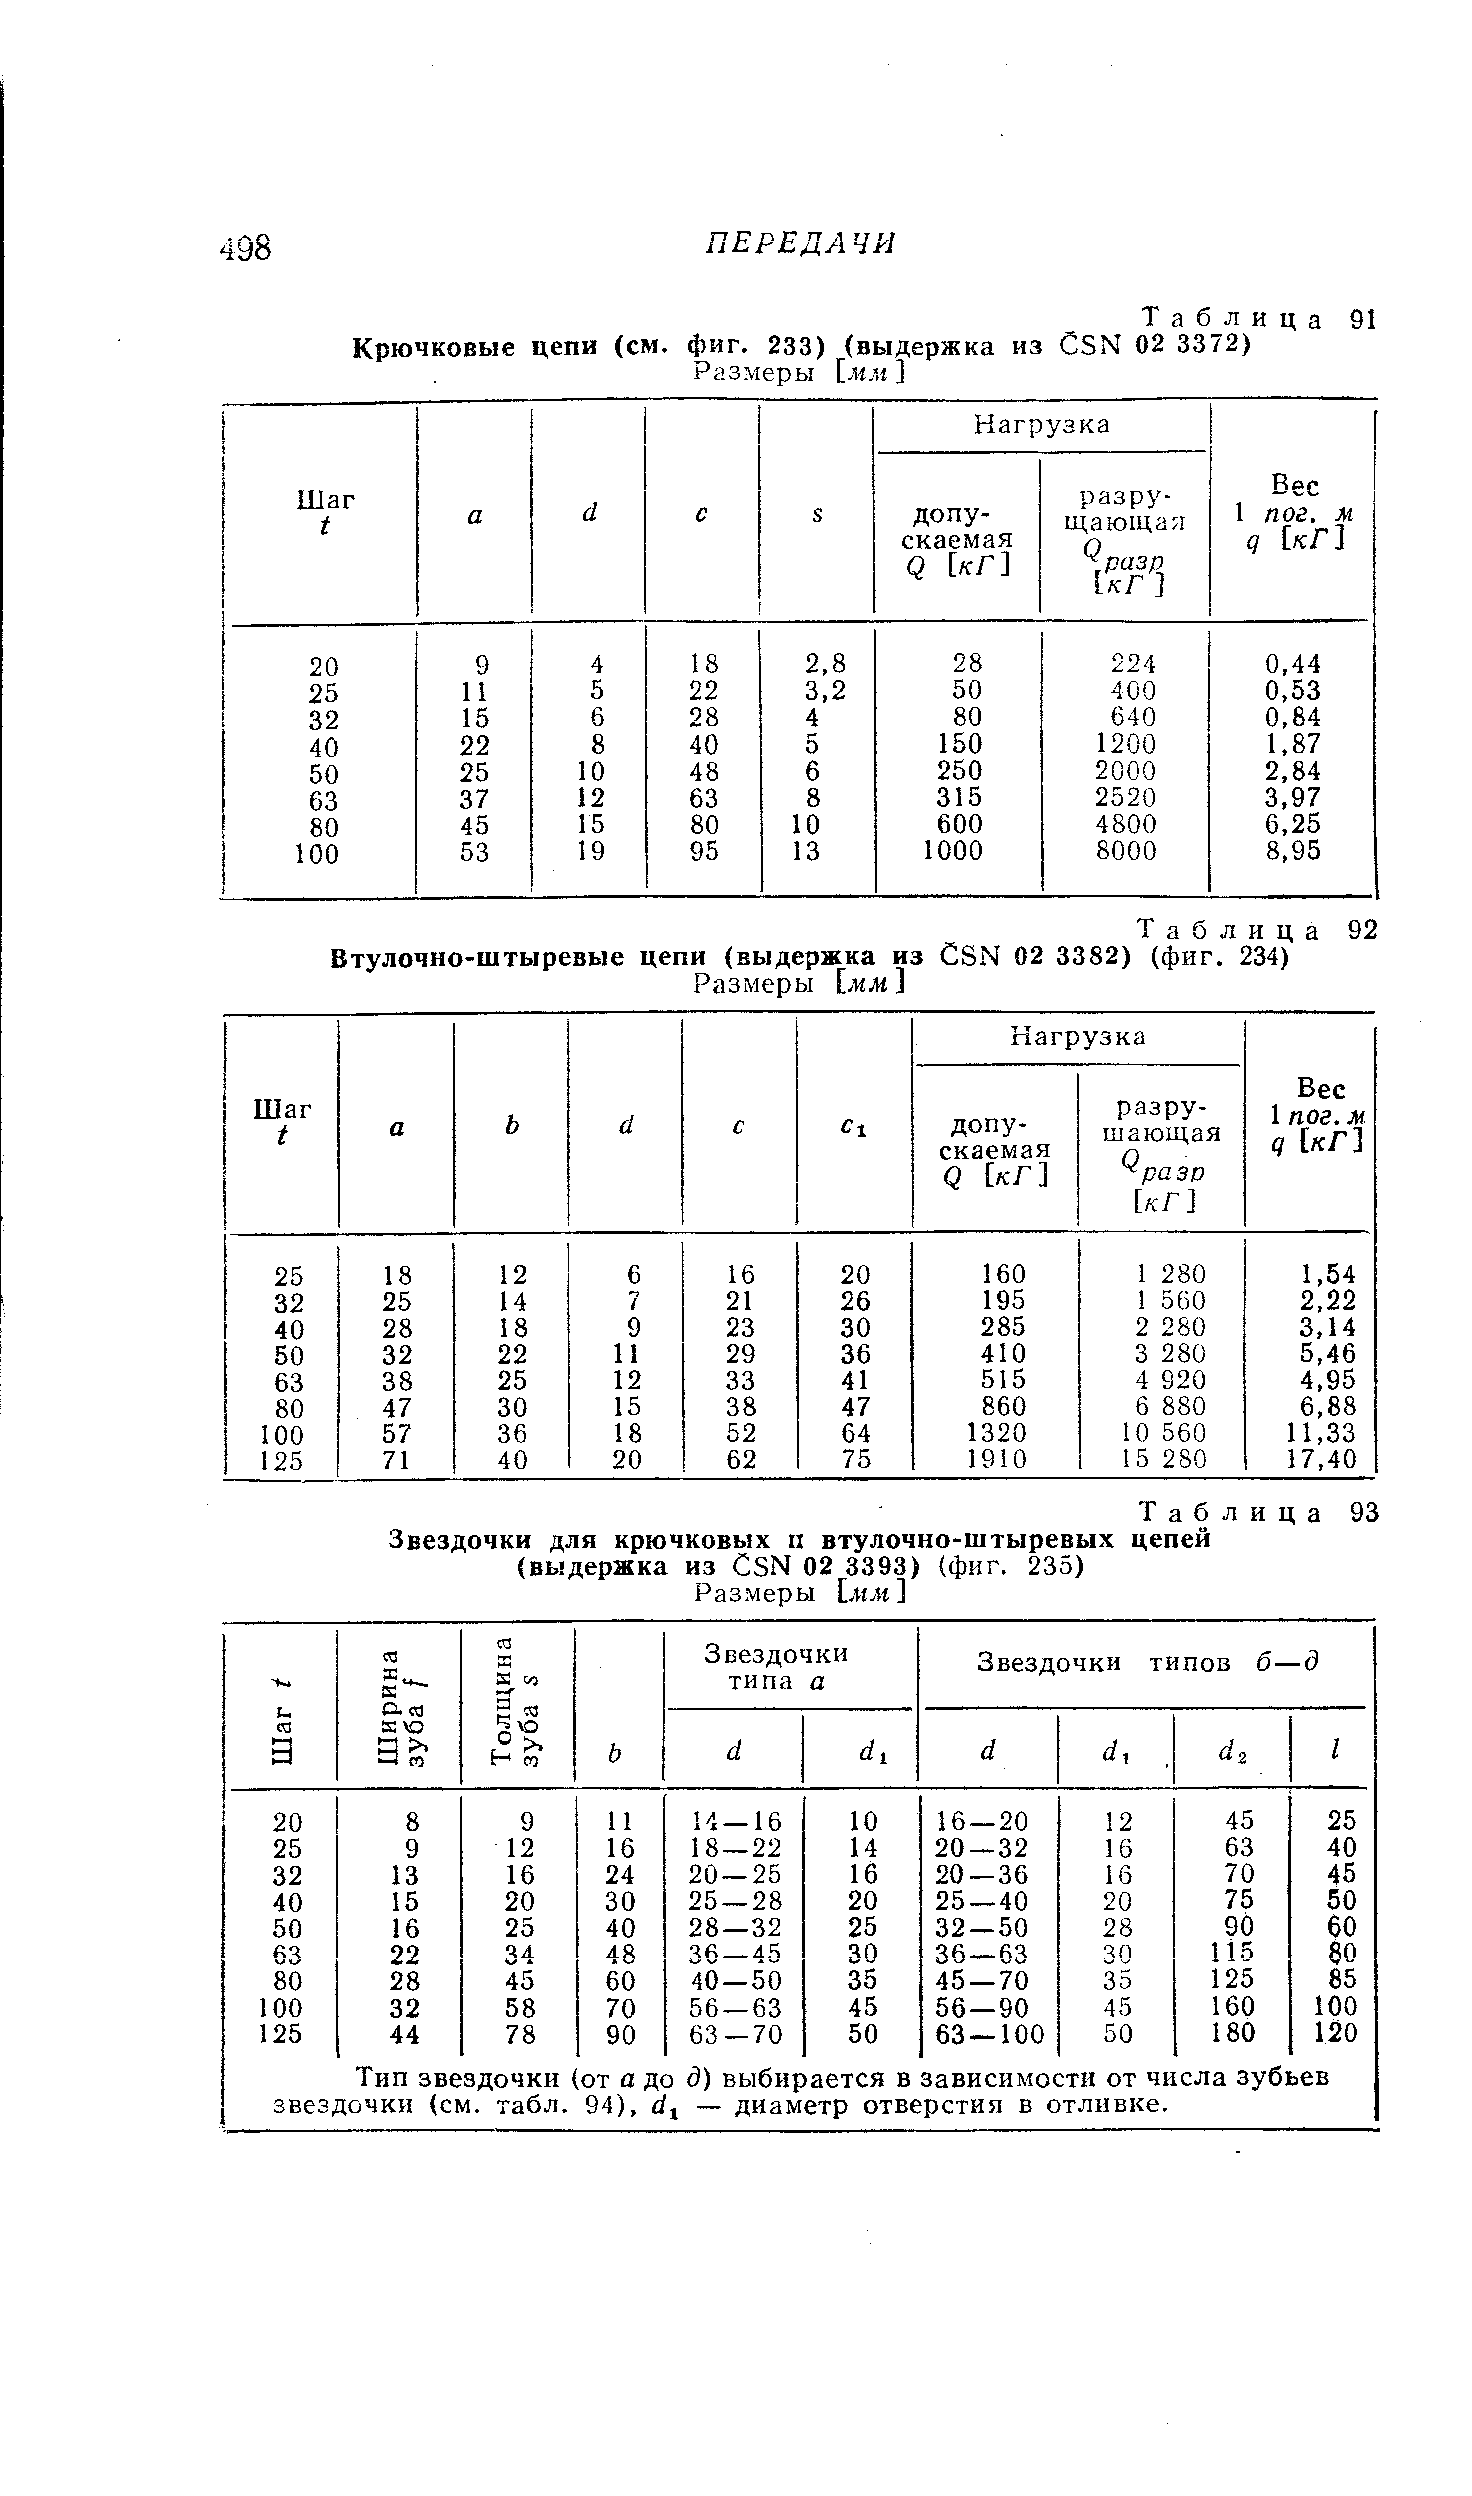 Таблица 93 Звездочки для крючковых п втулочно-штыревых цепей (выдержка из СЗМ 02 3393) (фиг. 235)
